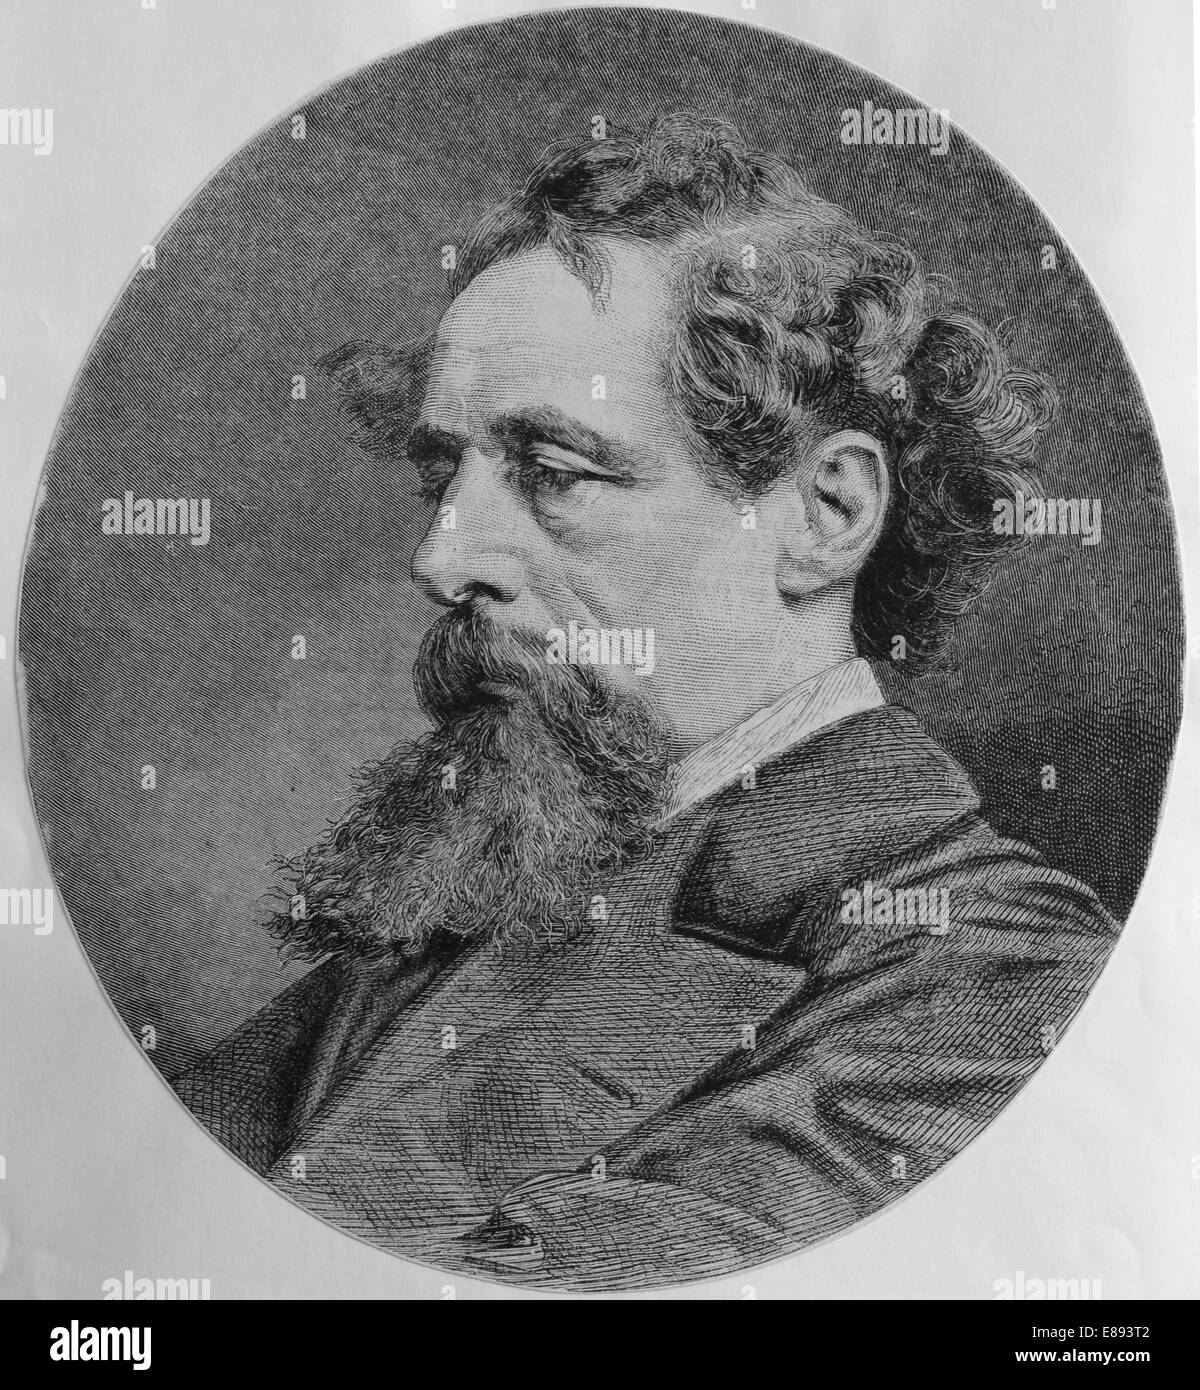 Charles Dickens (1812-1870). Englischer Schriftsteller und Gesellschaftskritiker. Porträt. Gravur in spanischer Sprache veröffentlicht. Stockfoto